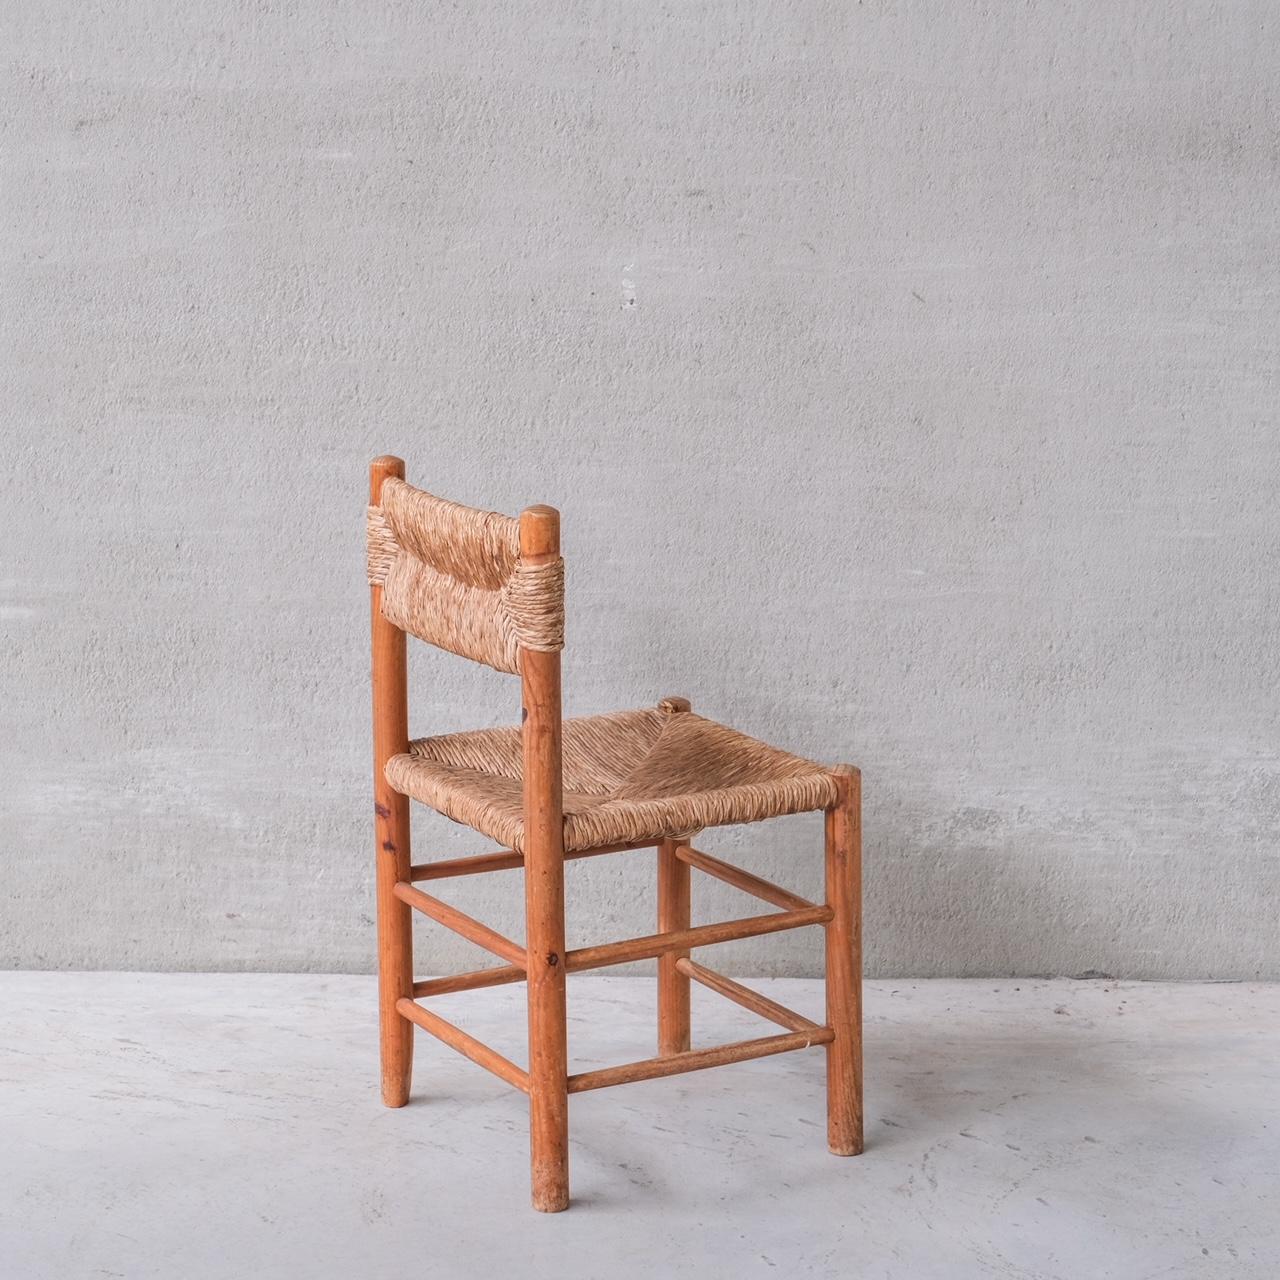 Ein einzelner Esszimmerstuhl oder Beistellstuhl der niederländischen Designerin Ate van Apeldoorn für Houtwerk Hattem.

Holland, ca. 1960er Jahre.

Ein ähnlicher Stil wie bei den Charlotte Perriand Dordogne Stühlen,

Ideal, um neben einem Kamin oder